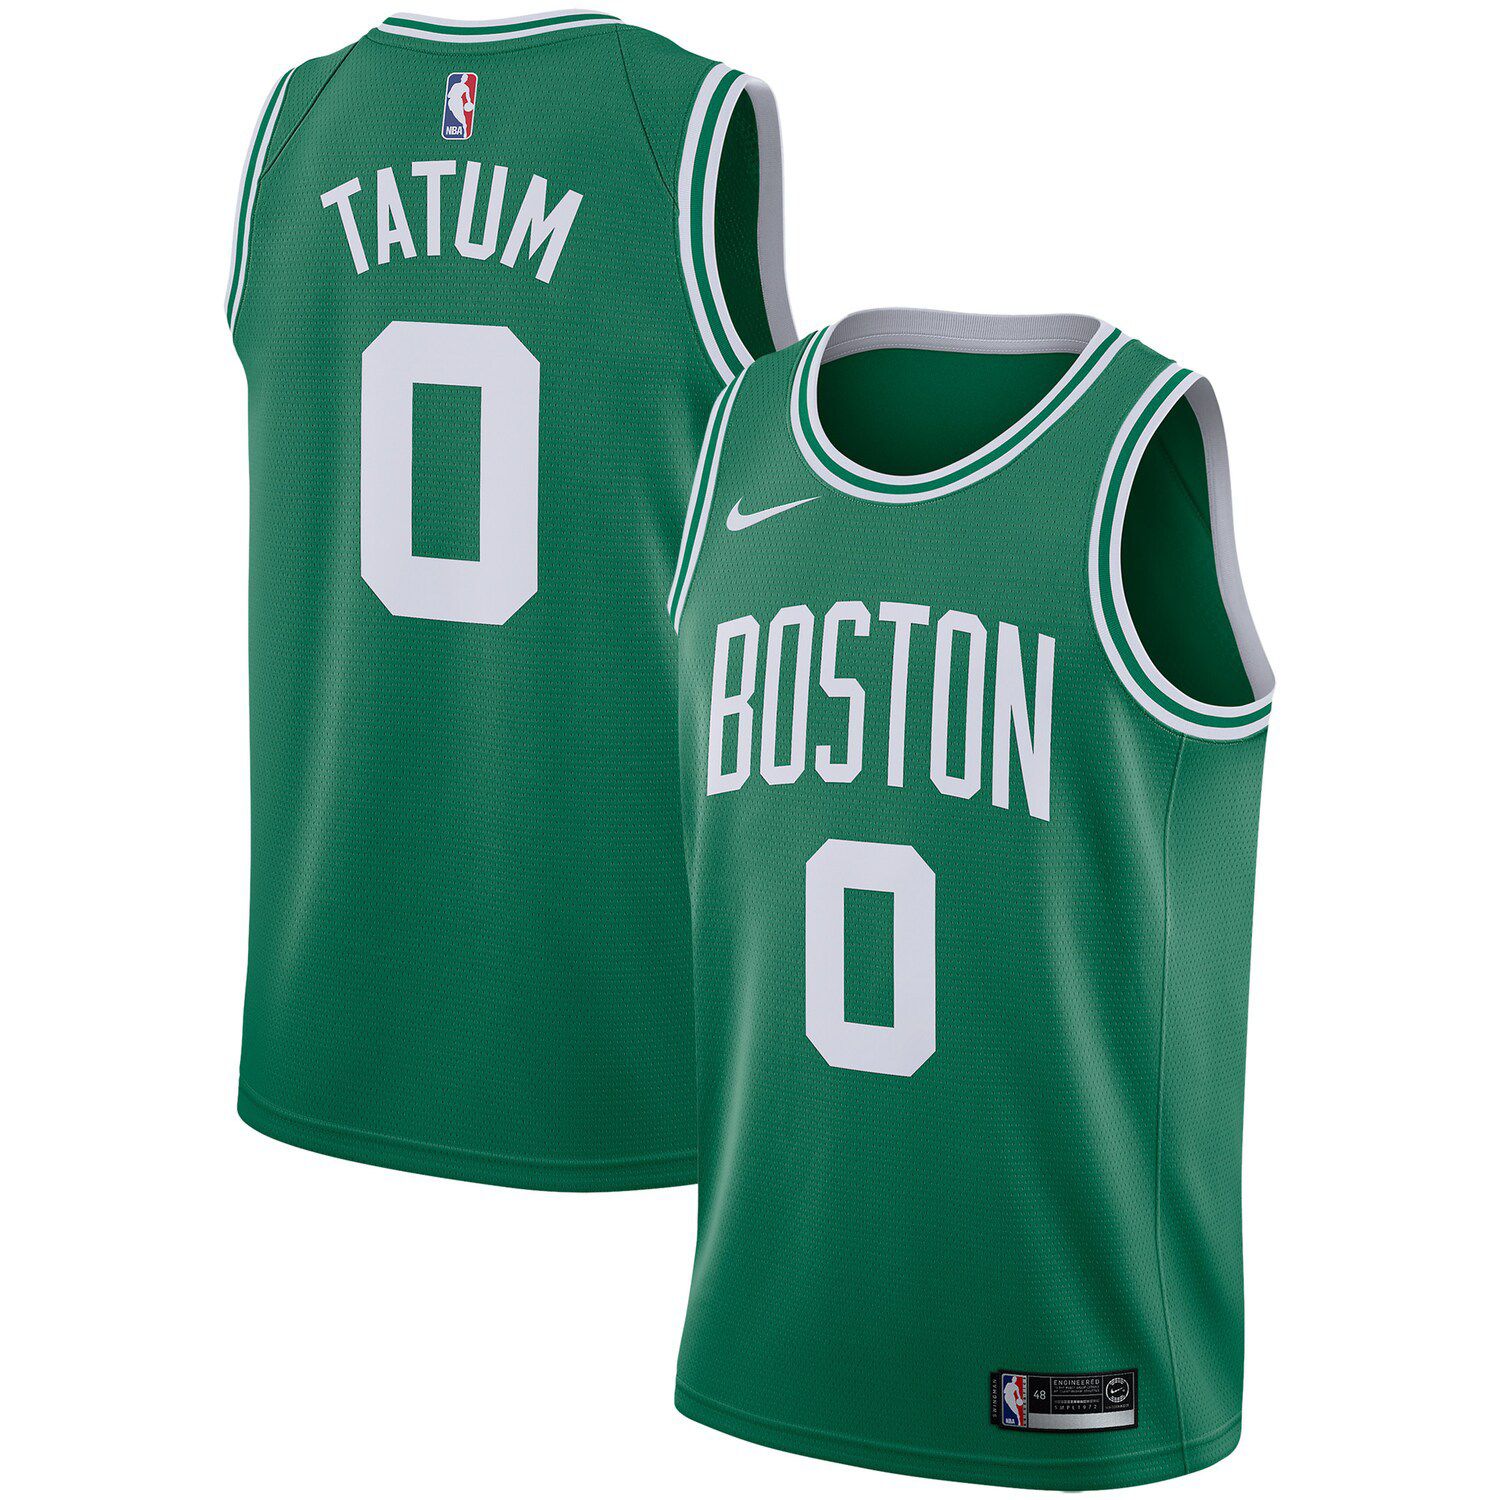 Green Boston Celtics Swingman Jersey 